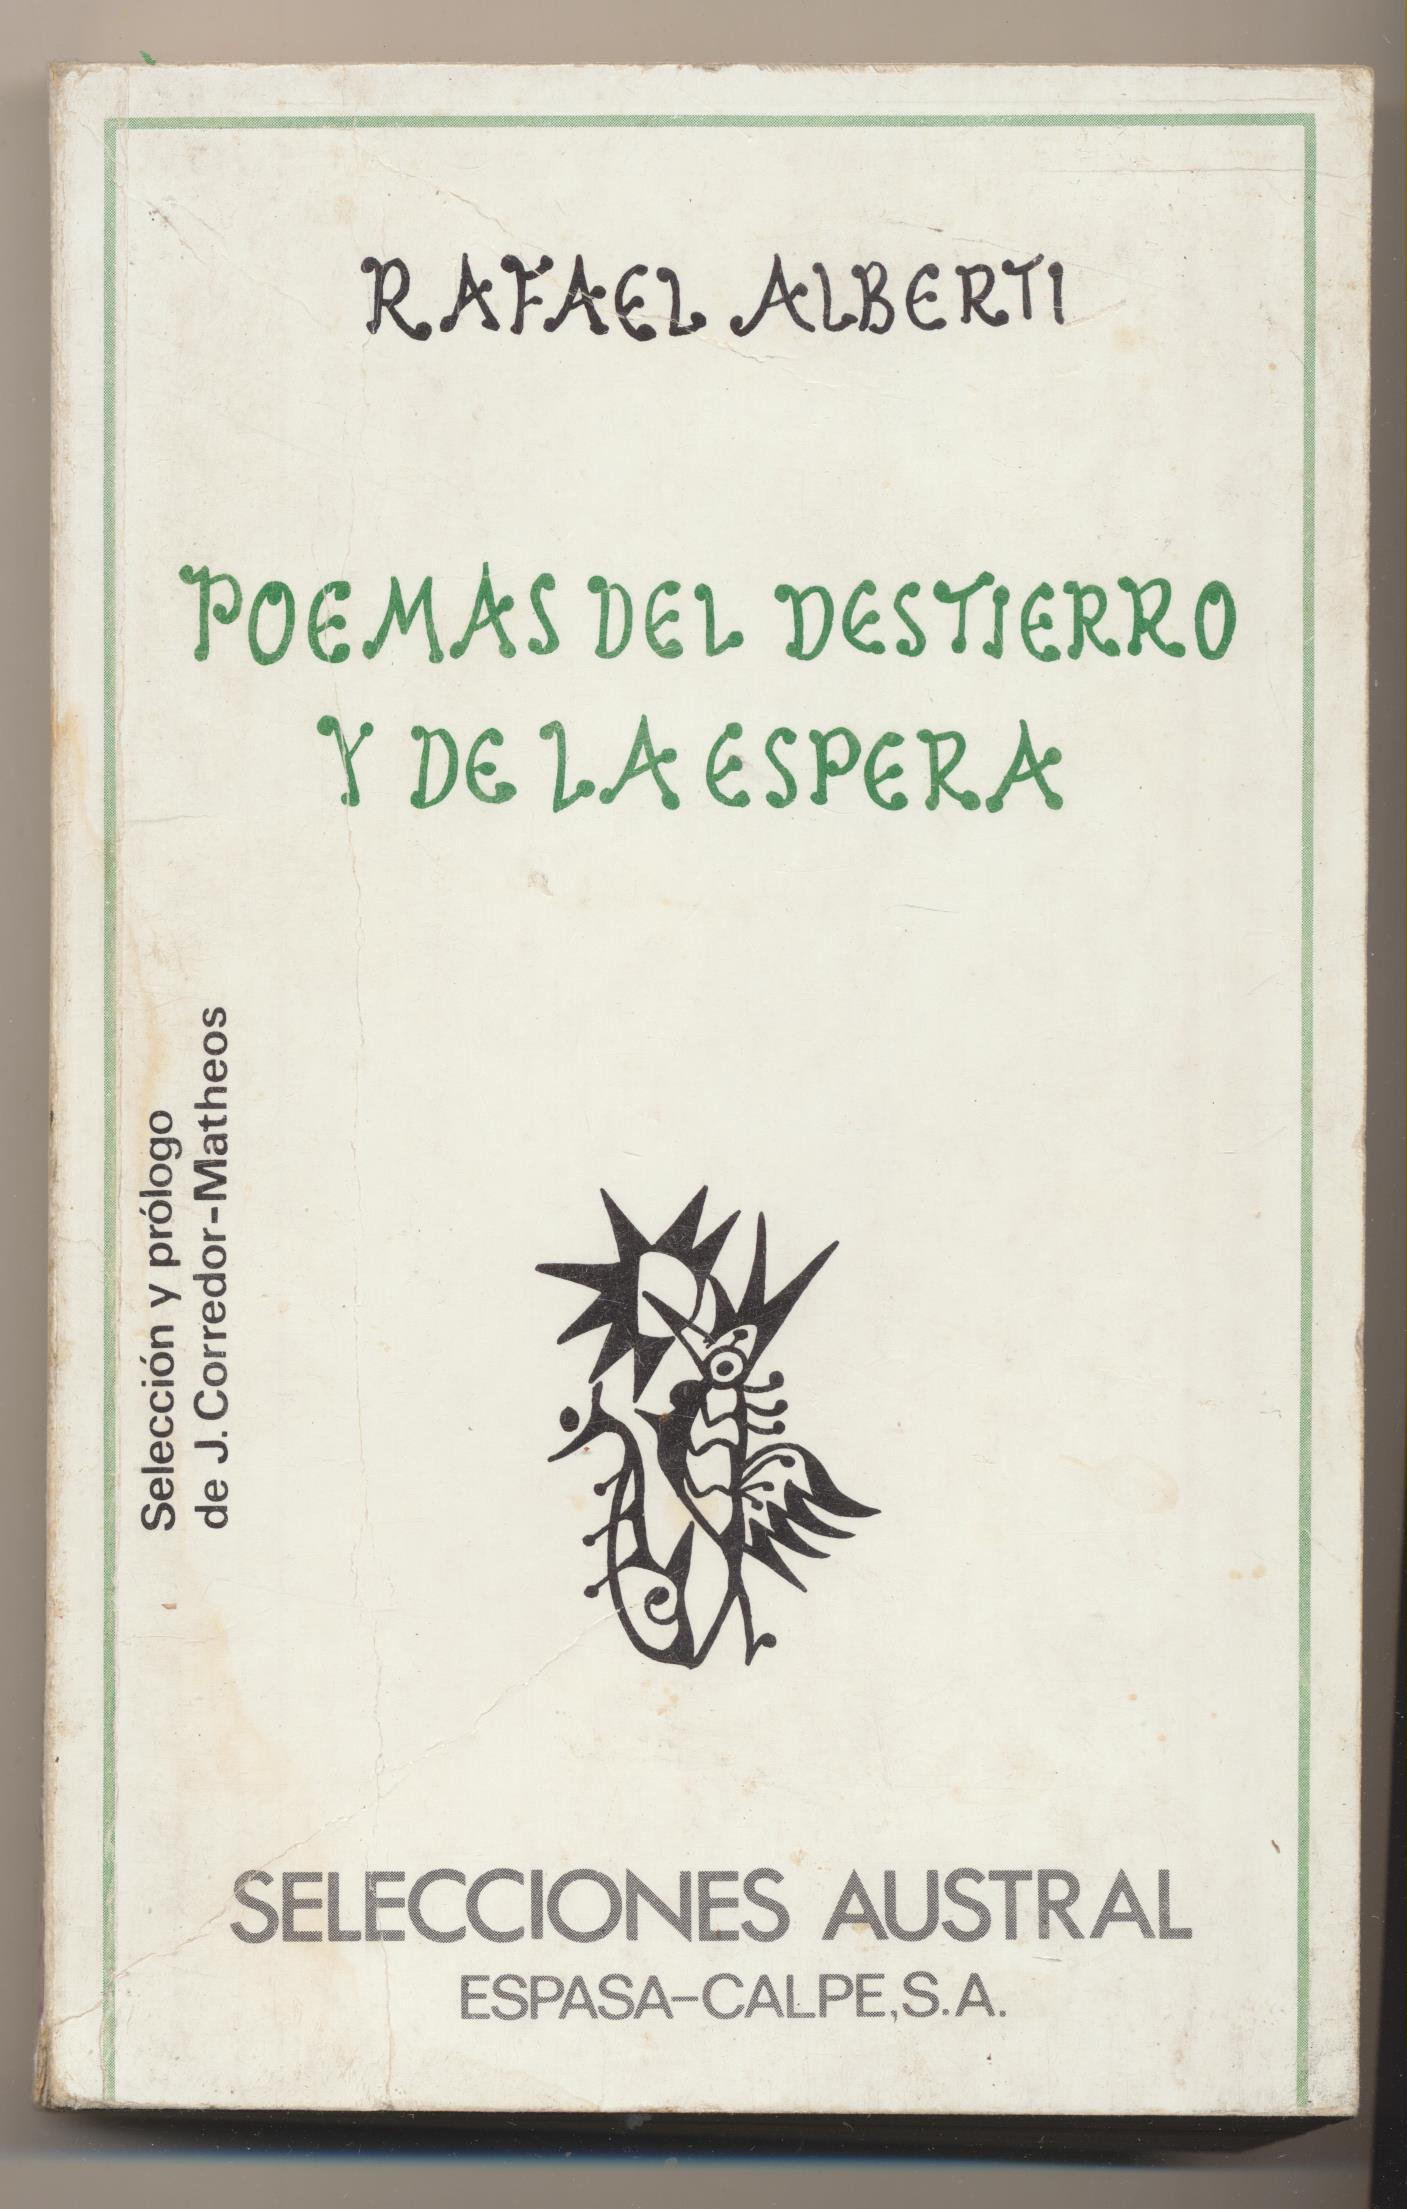 Rafael Alberti. Poemas del destierro y de la espera. Espasa Calpe 1976